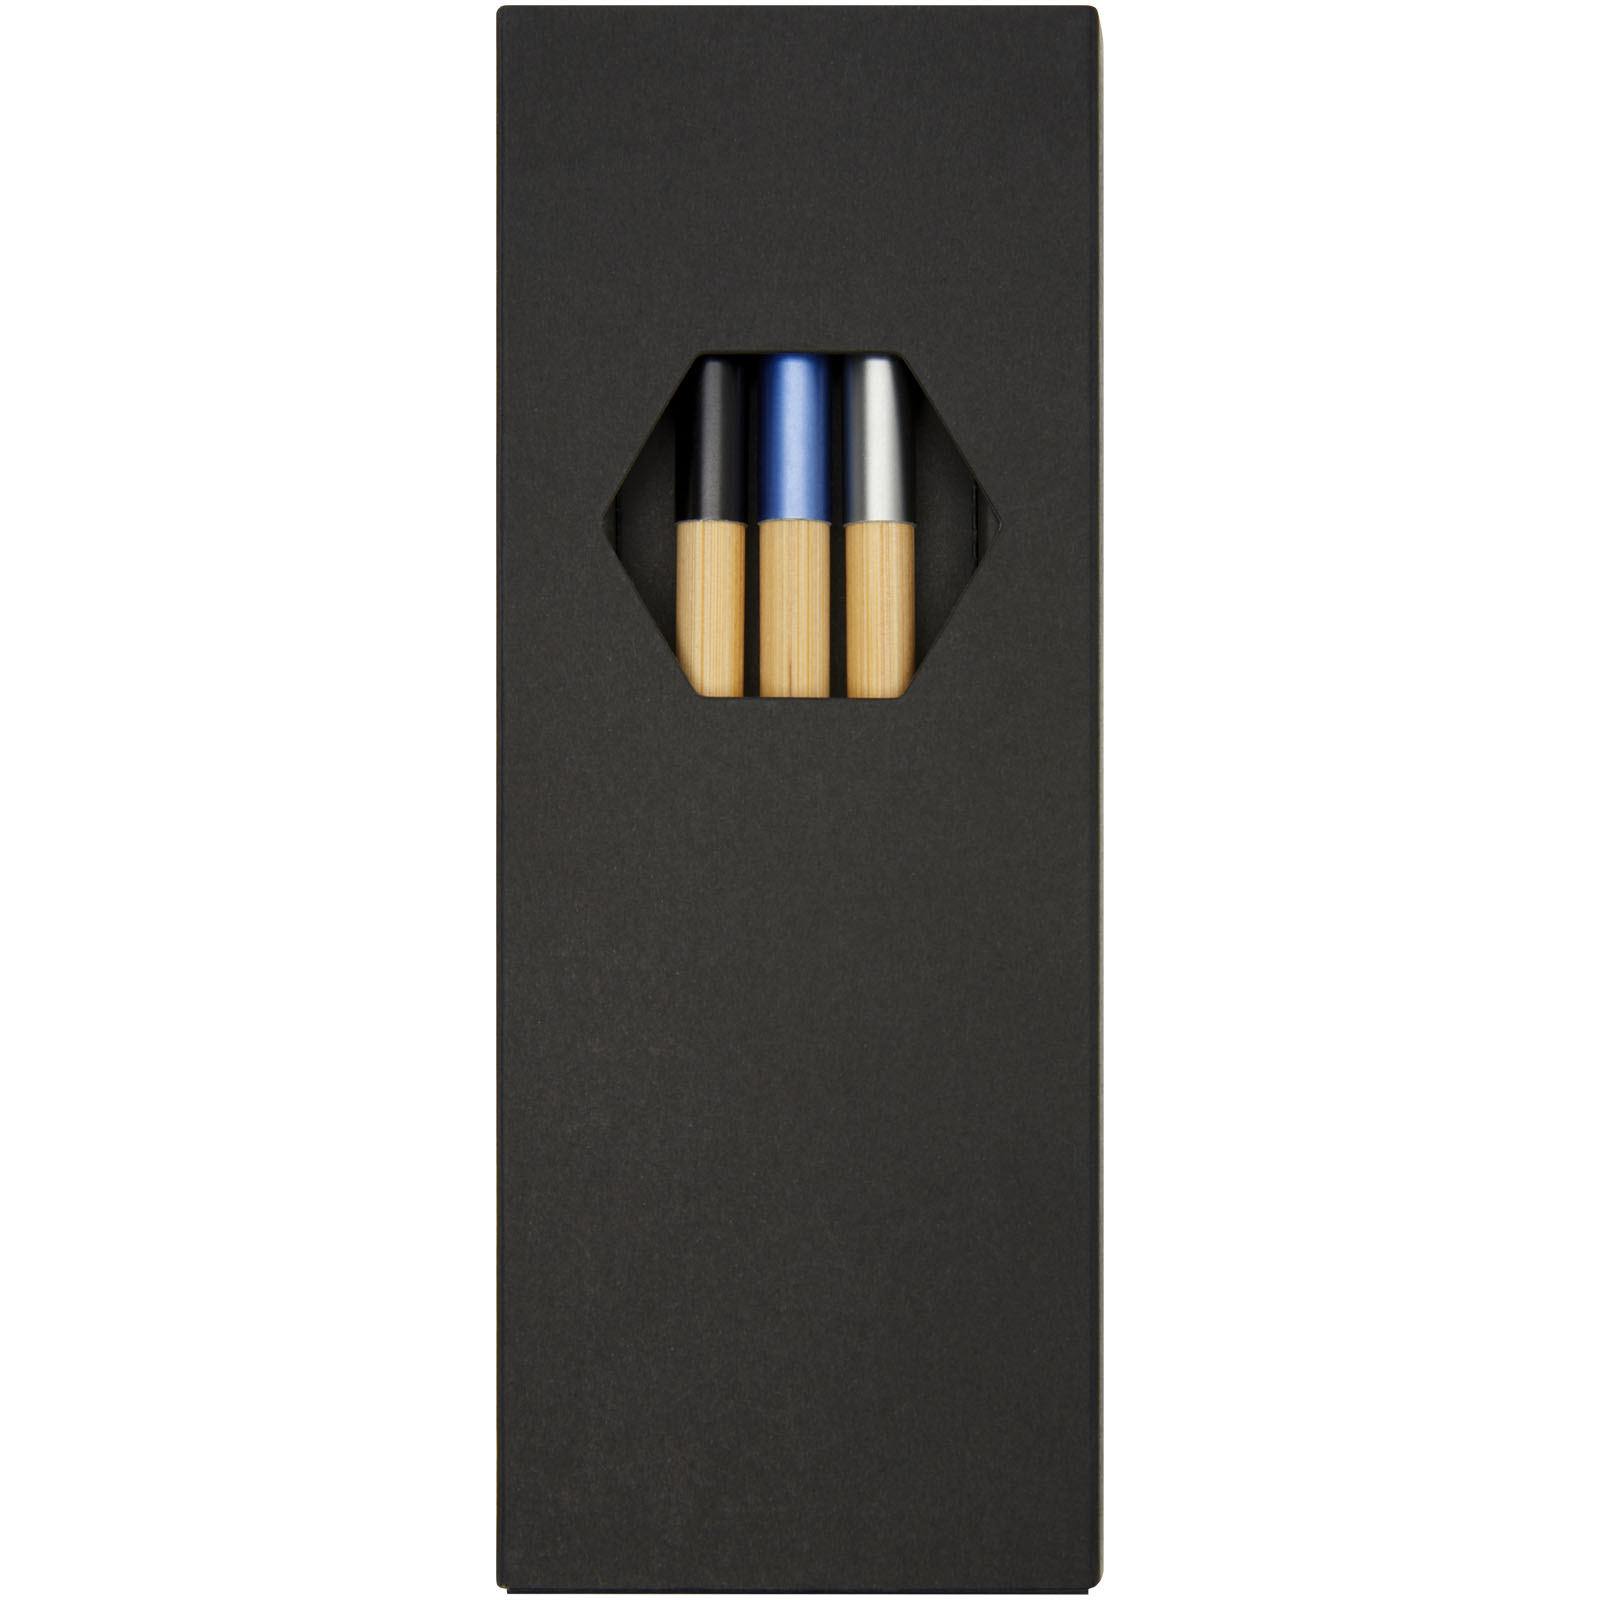 Parure de stylos publicitaires - Parure Kerf de stylos en bambou, 3 pièces - 4